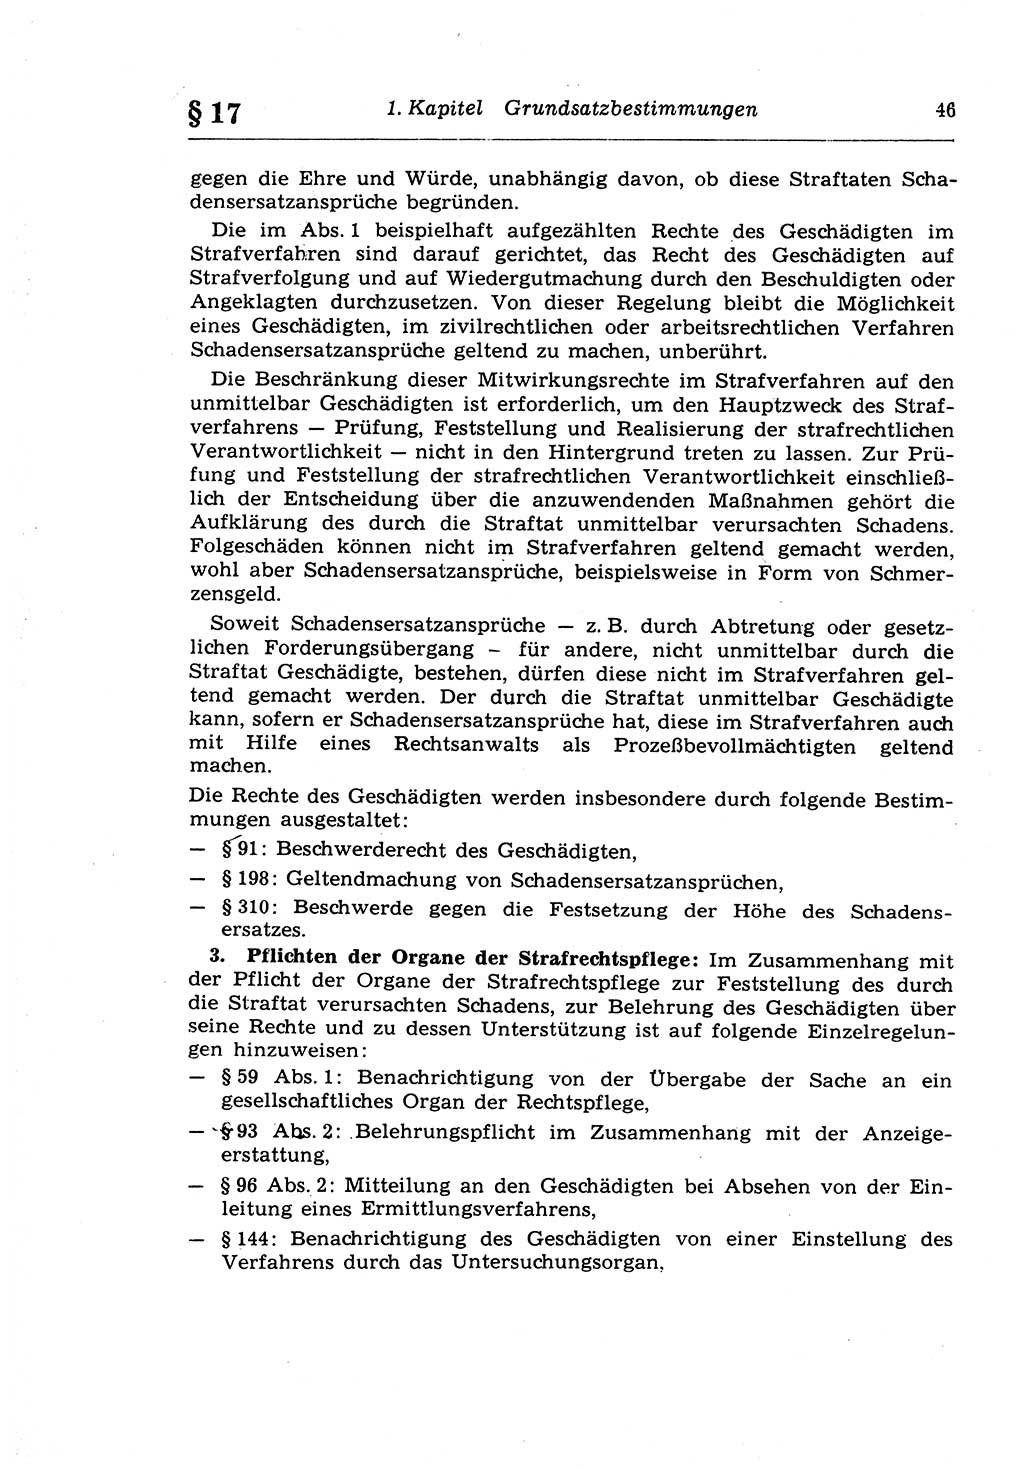 Strafprozeßrecht der DDR (Deutsche Demokratische Republik), Lehrkommentar zur Strafprozeßordnung (StPO) 1968, Seite 46 (Strafprozeßr. DDR Lehrkomm. StPO 19688, S. 46)